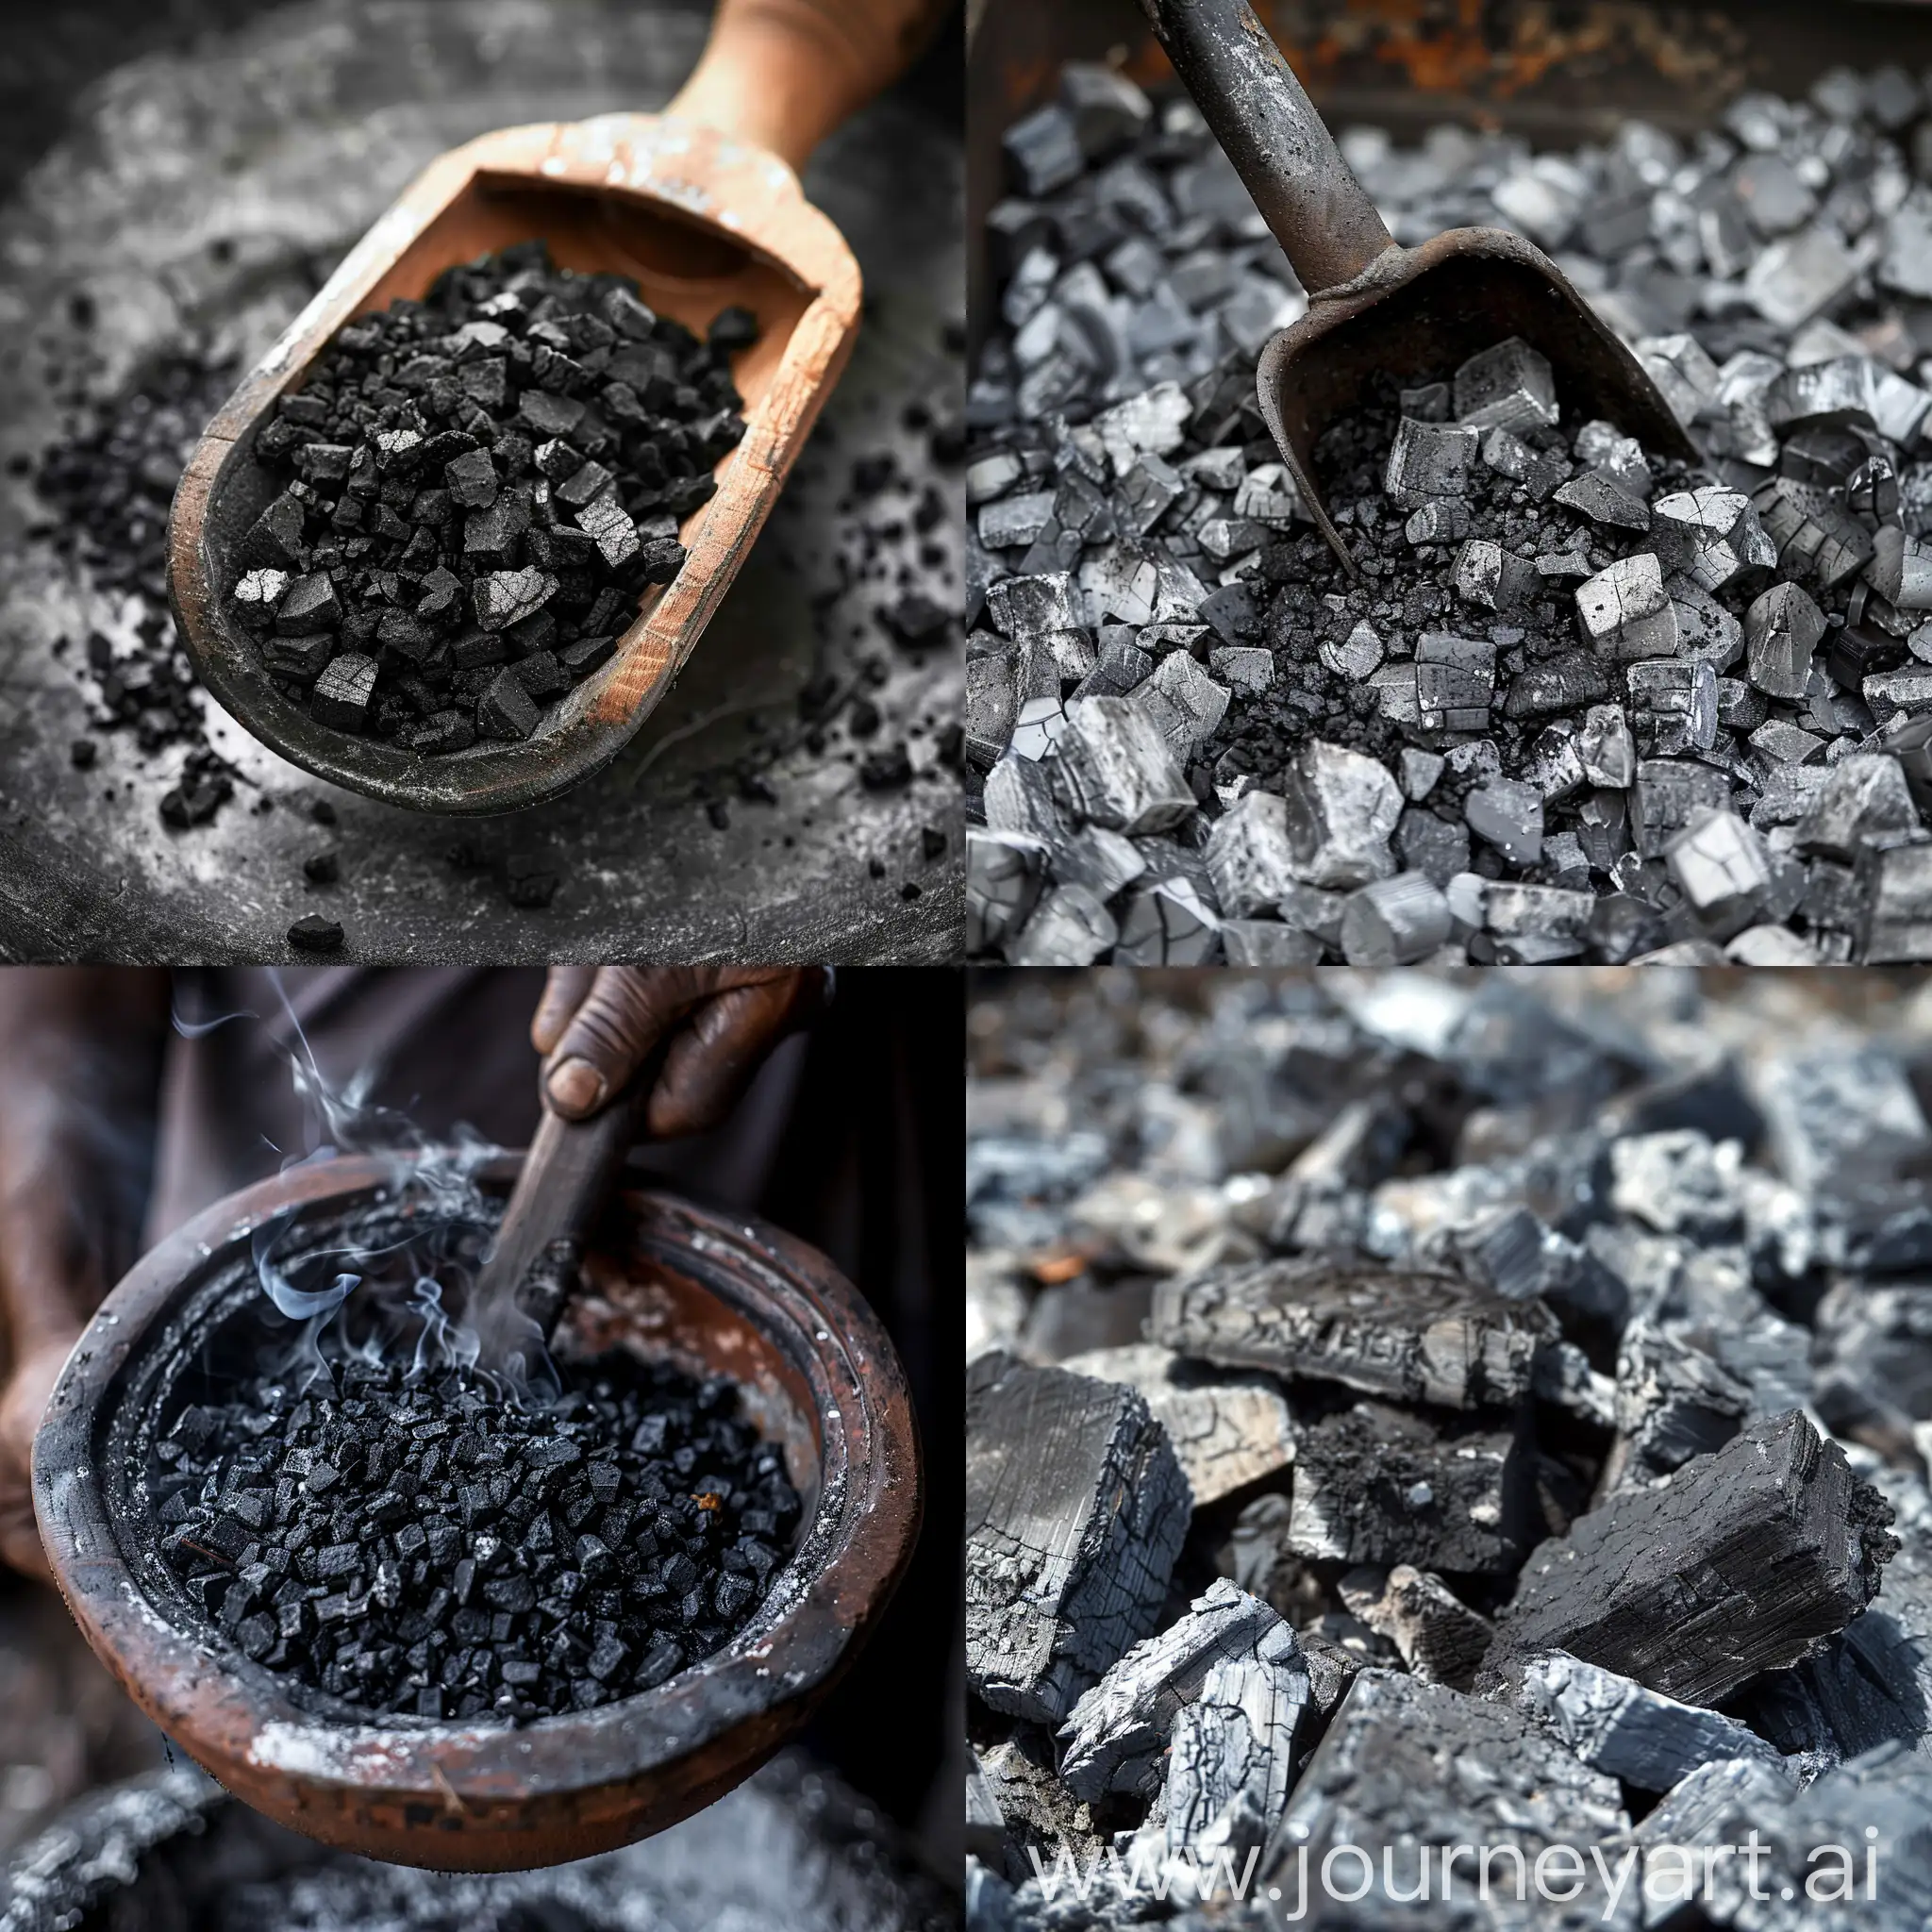 燃煤中含有氟元素，通过含氟煤的燃烧制作食物，导致氟元素大量进入食物中。请你根据以上描述绘制一个科研插图。